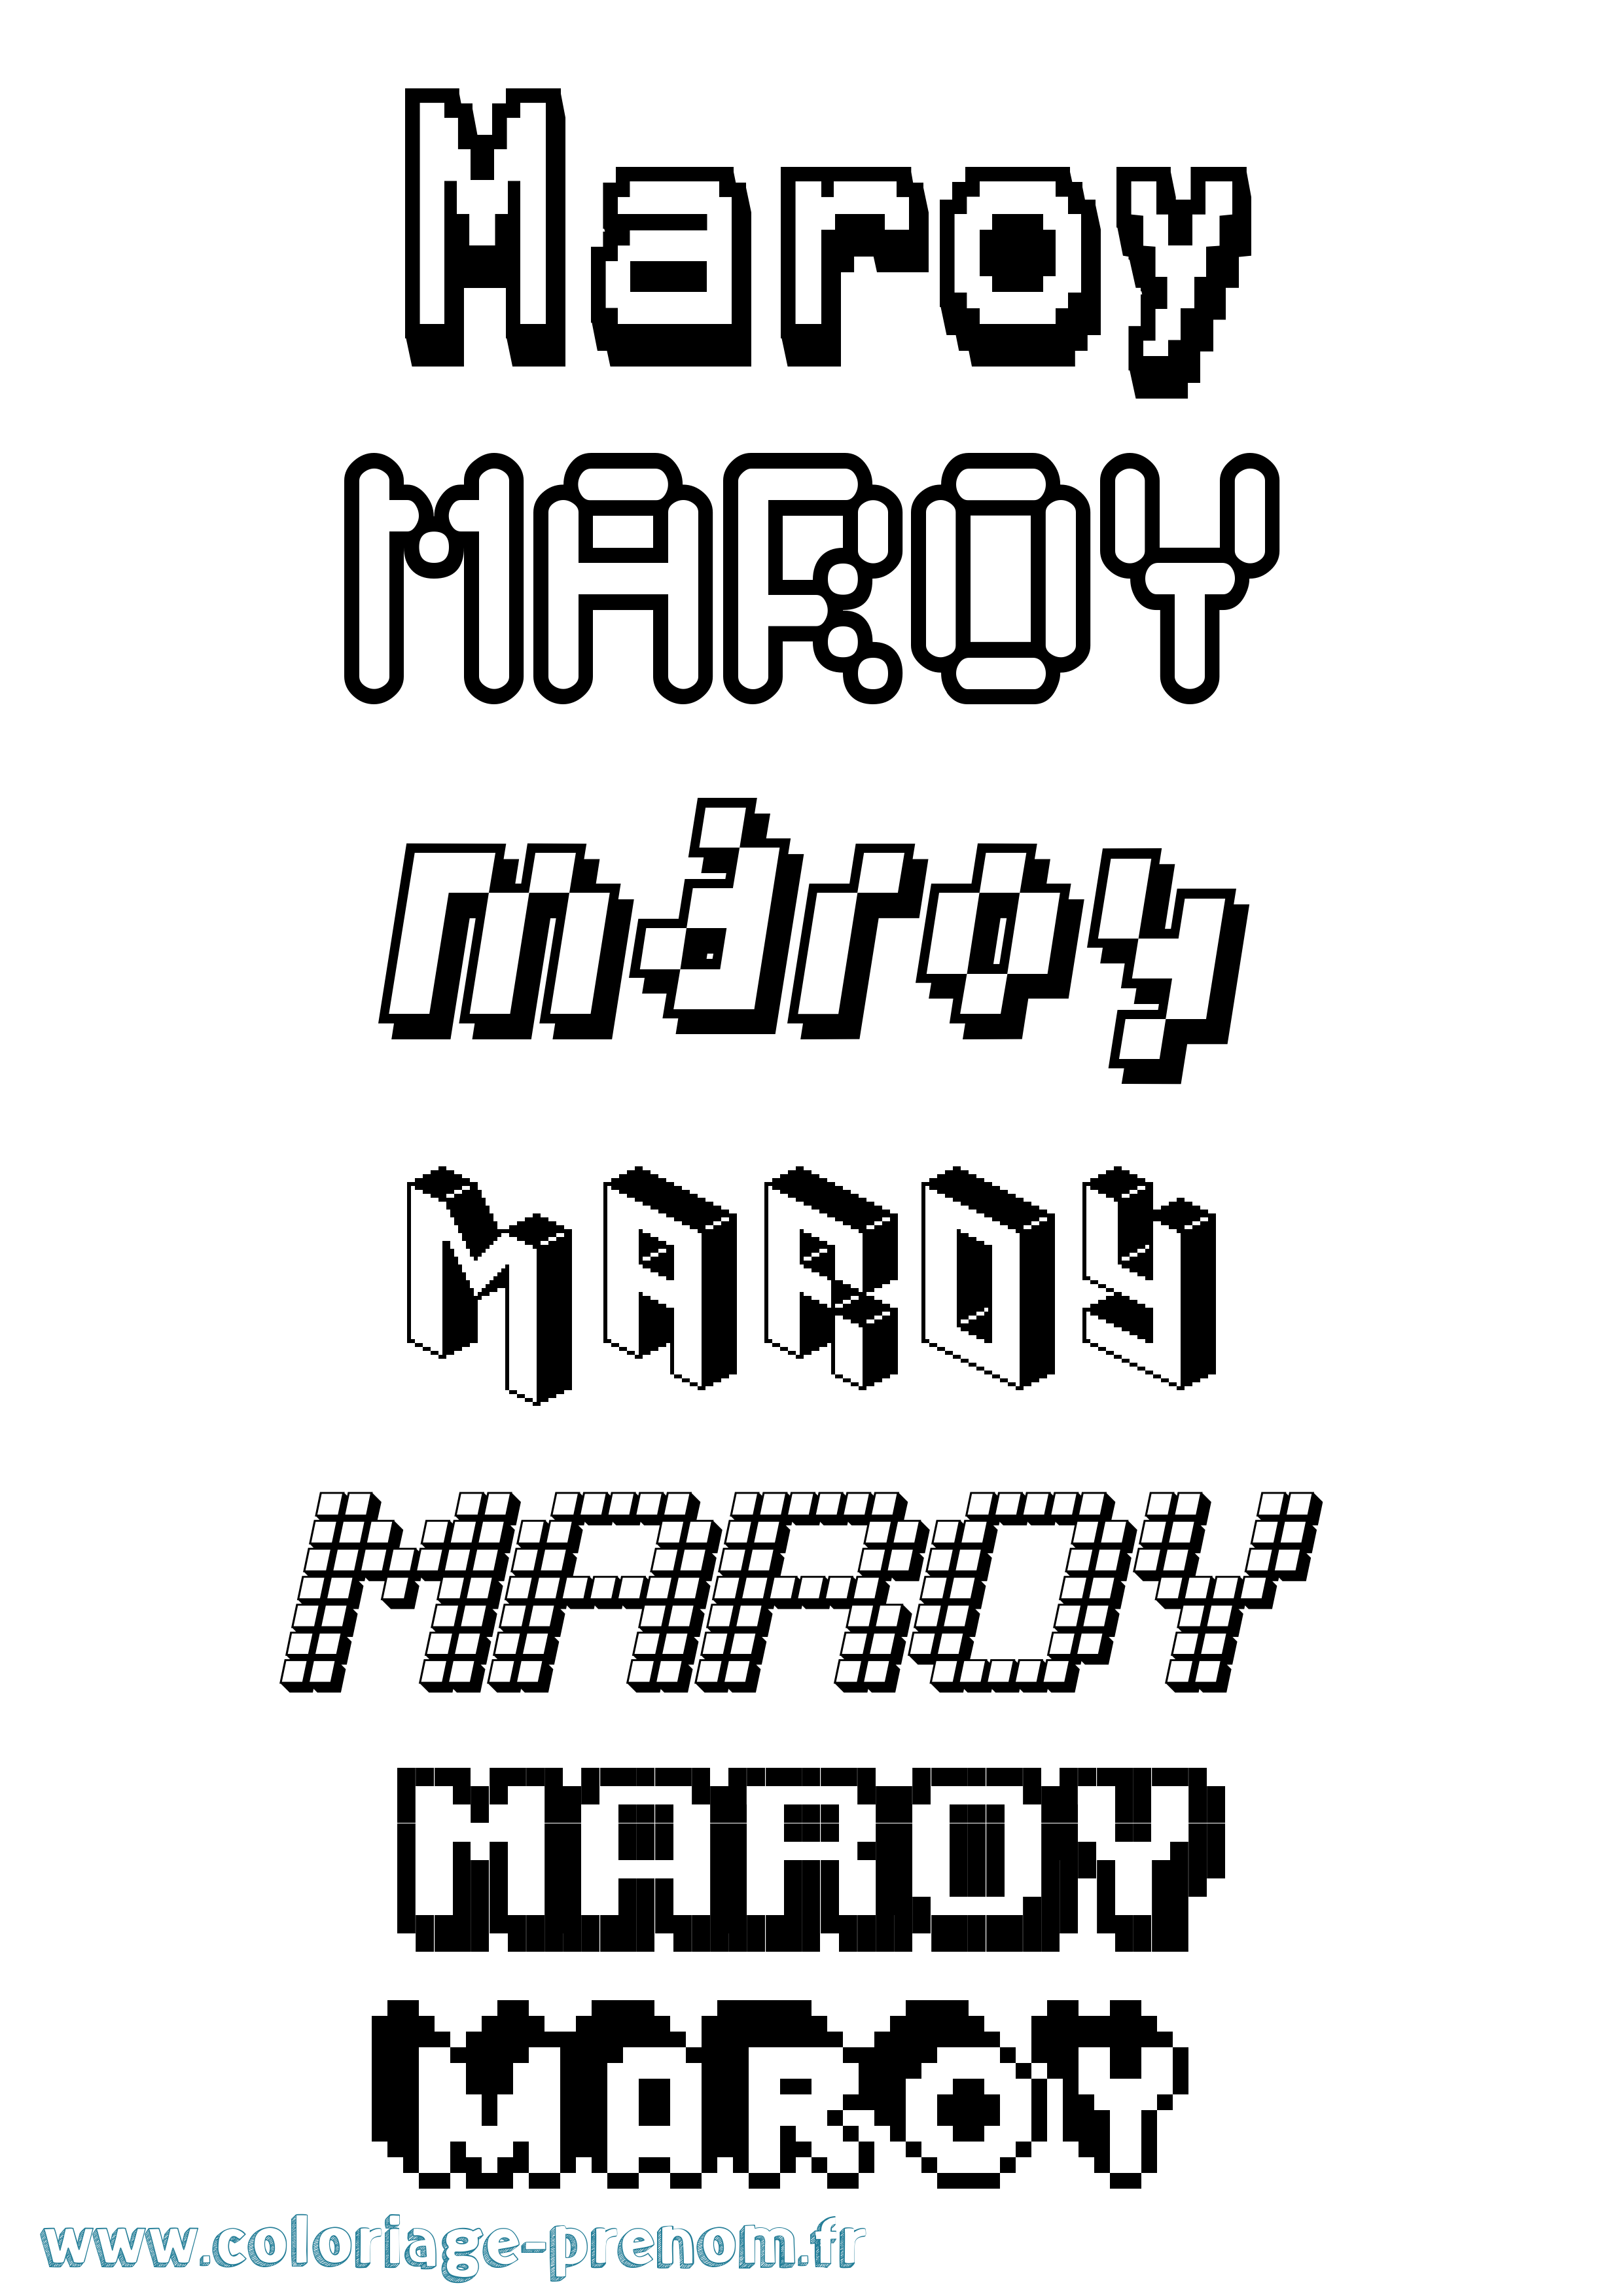 Coloriage prénom Maroy Pixel